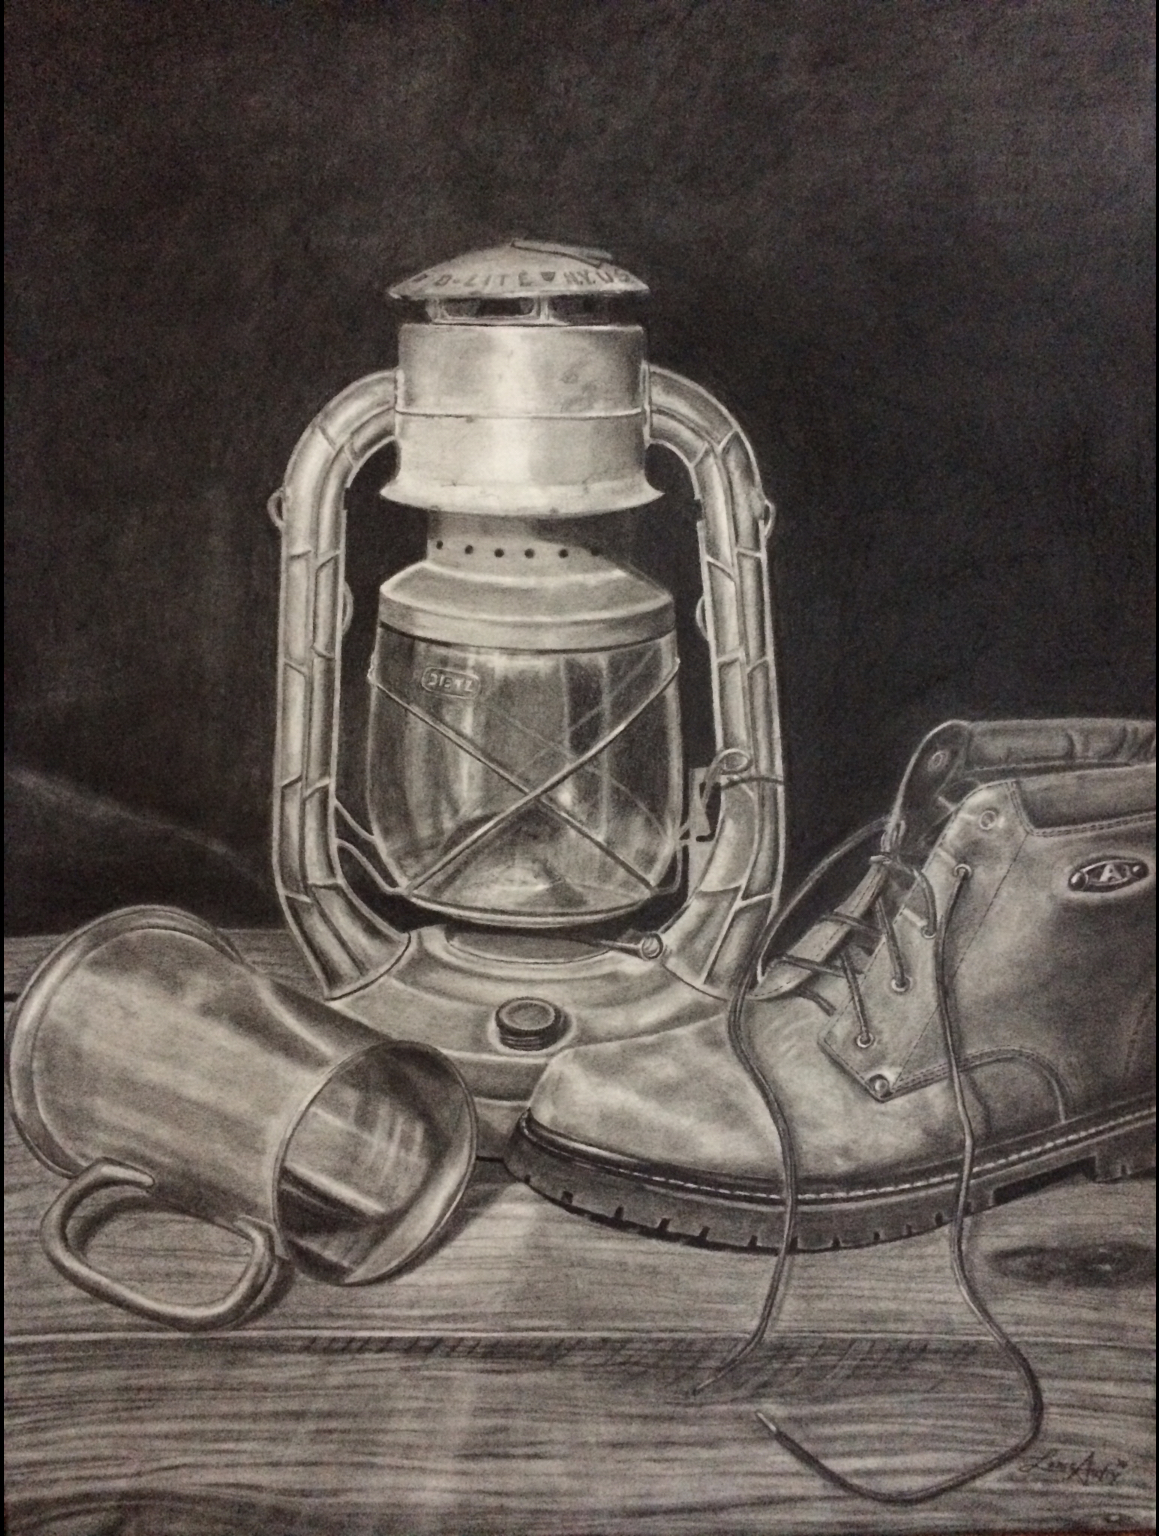 Lantern, Boot, and Beer Mug